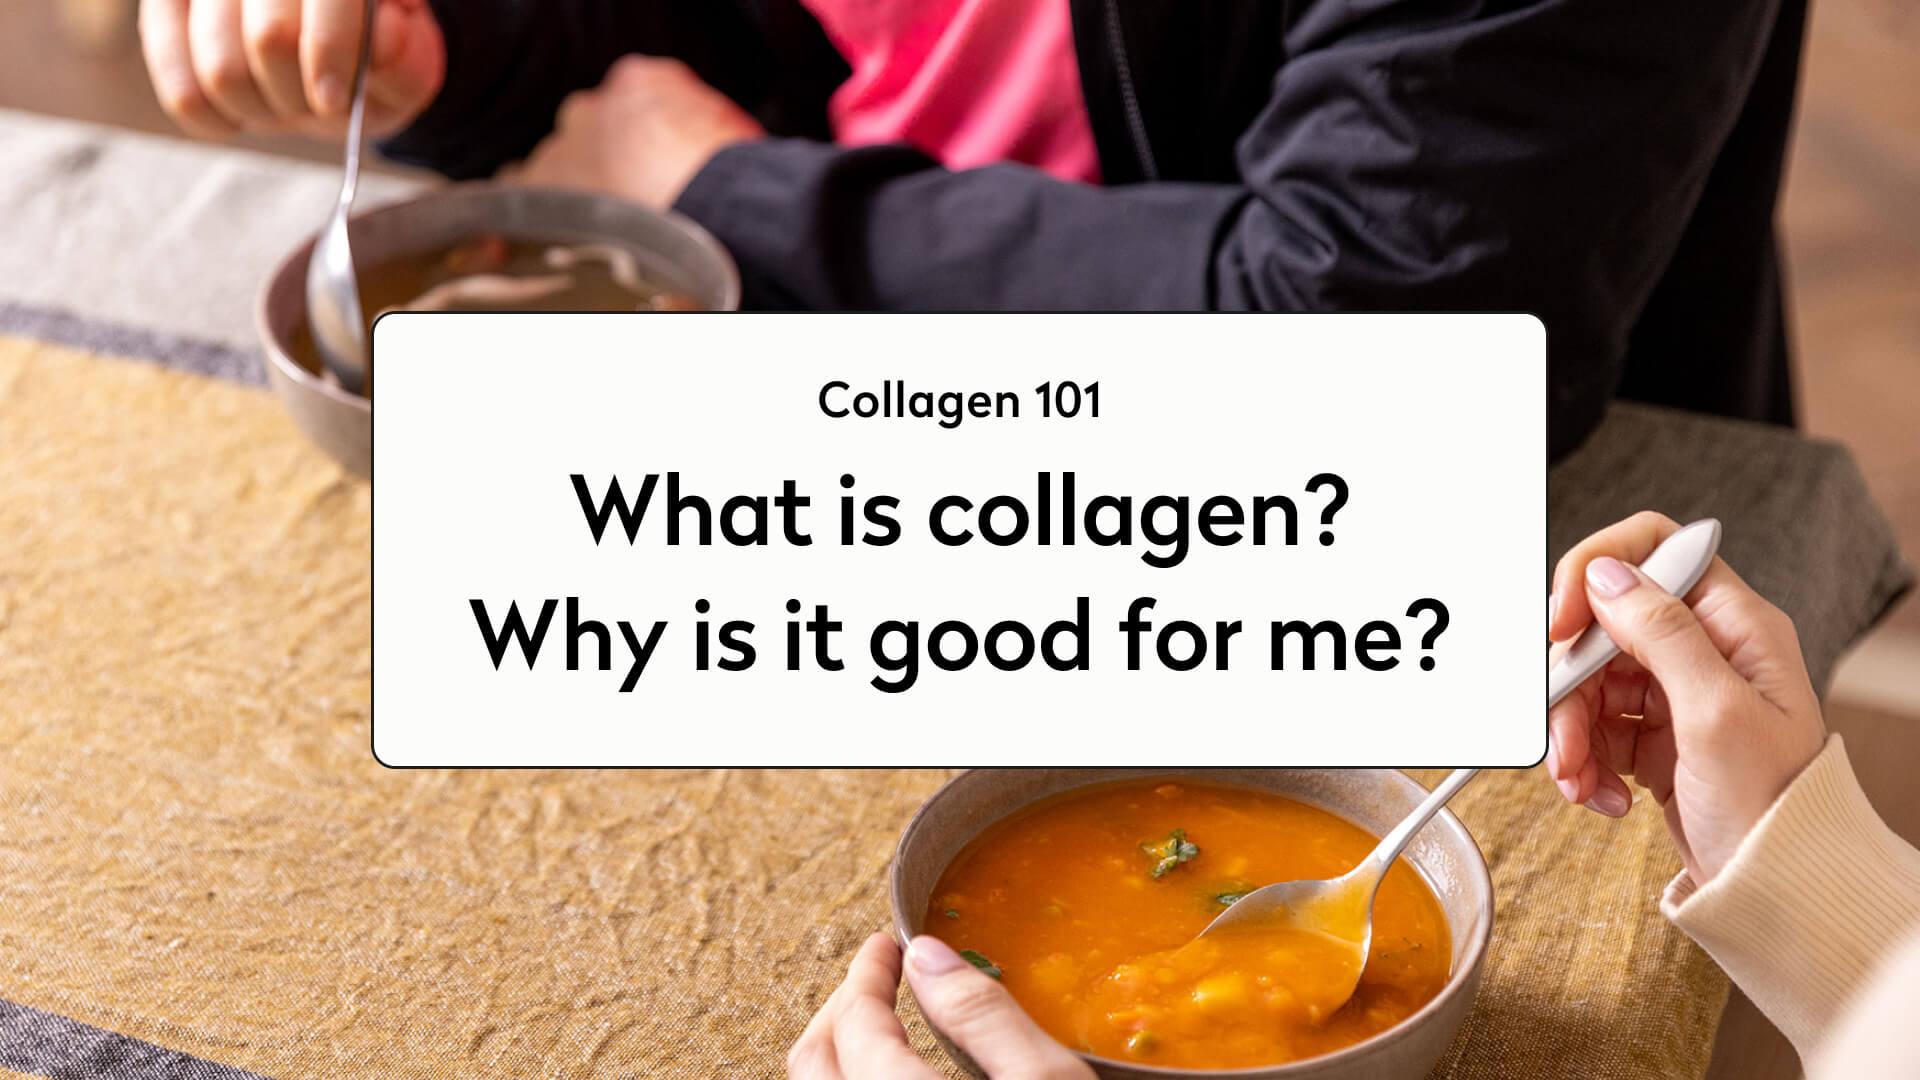 Collagen 101: What Is Collagen?